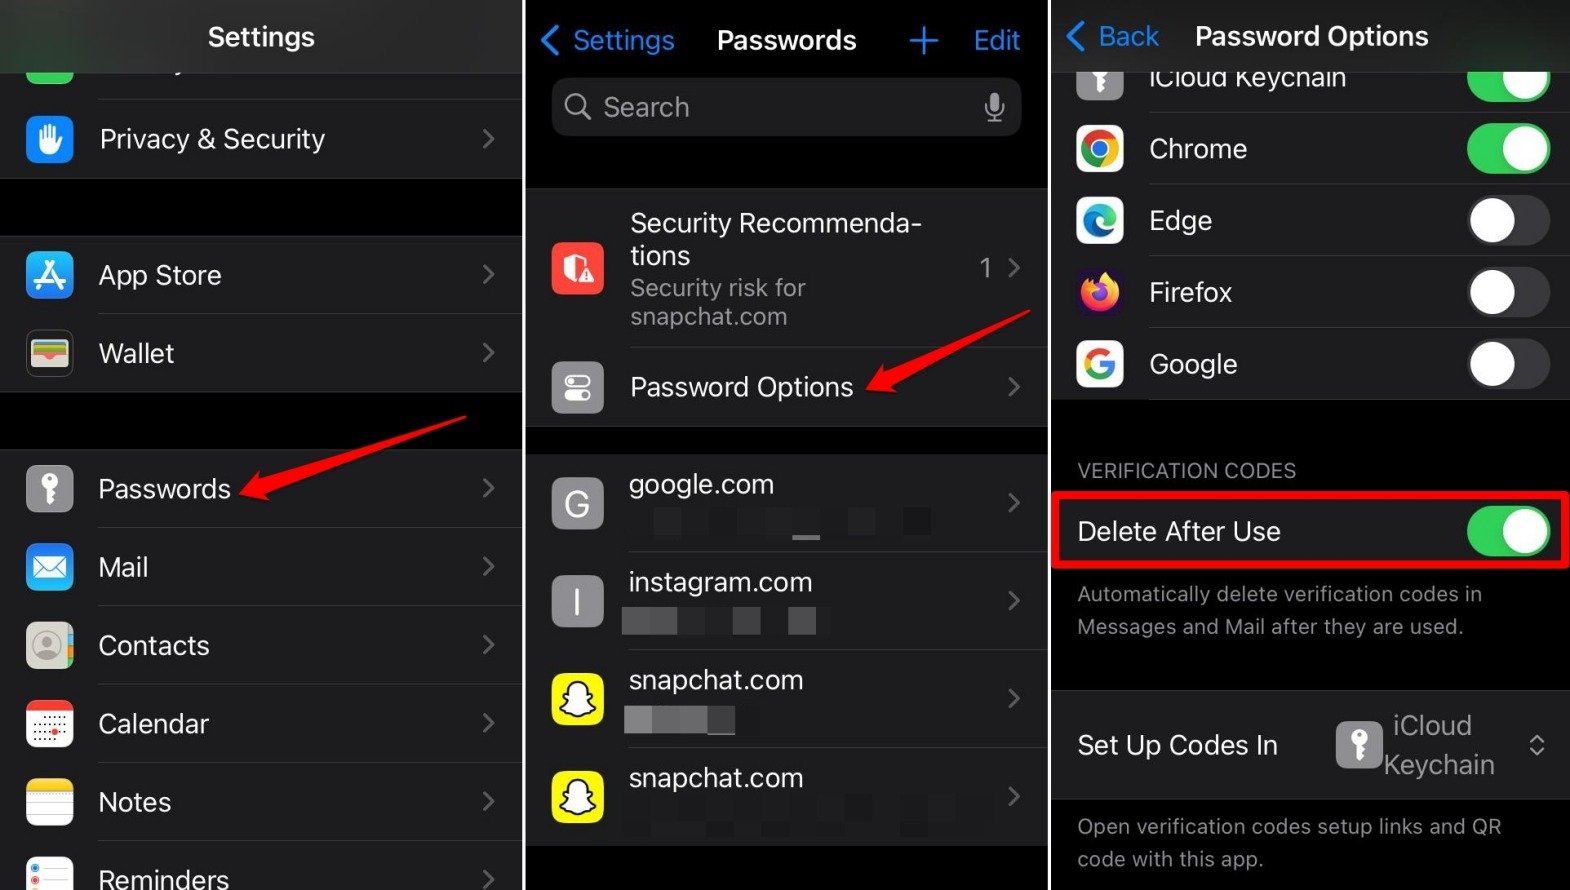 Enable-delete-after-use для удаления одноразовых паролей и кодов подтверждения на iPhone